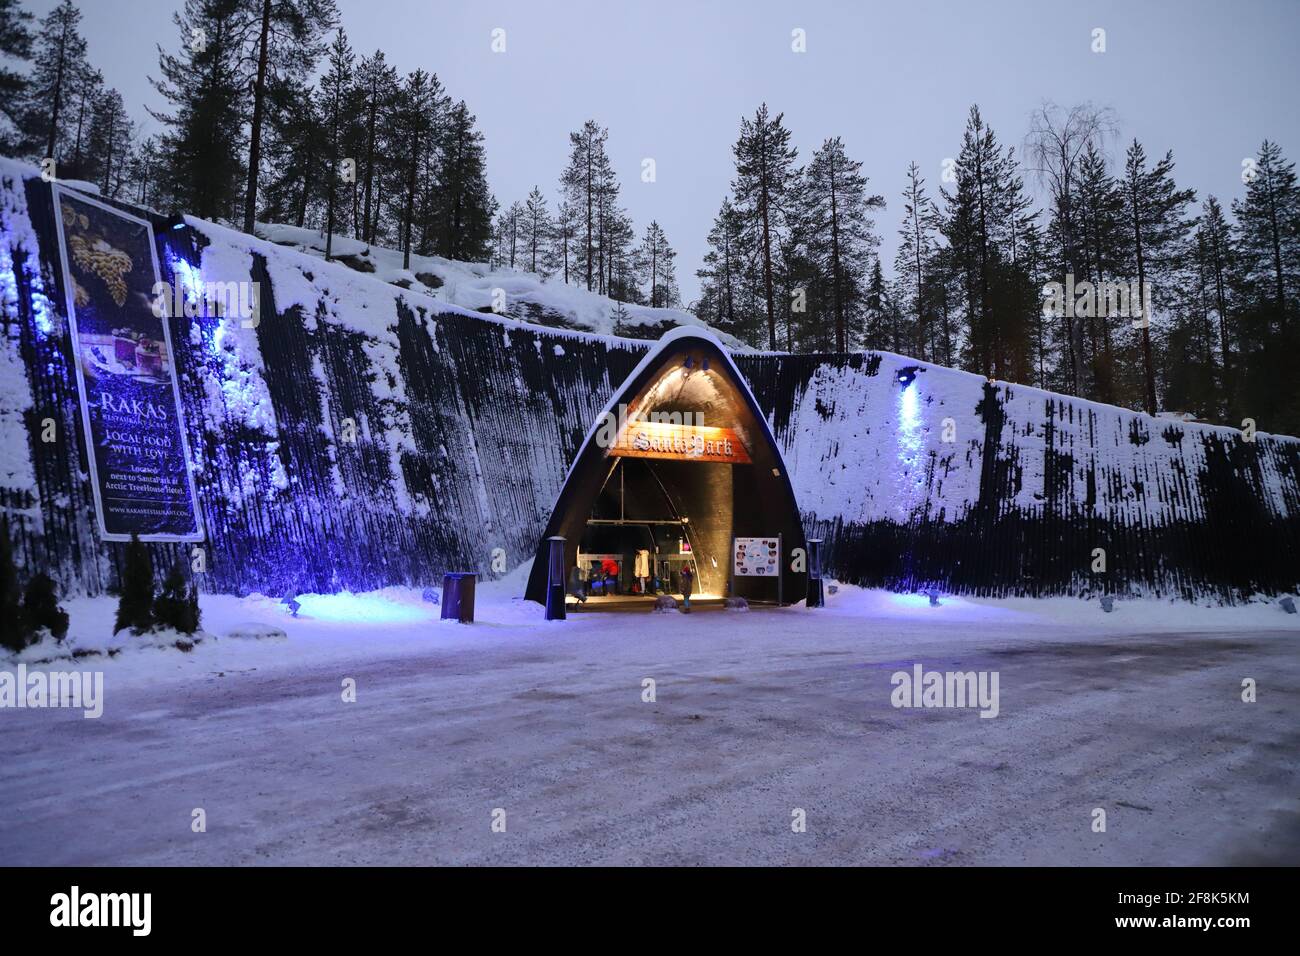 FINLAND, ROVANIEMI - JANUARY 03, 2020: Entrance to the Santa Park Stock Photo